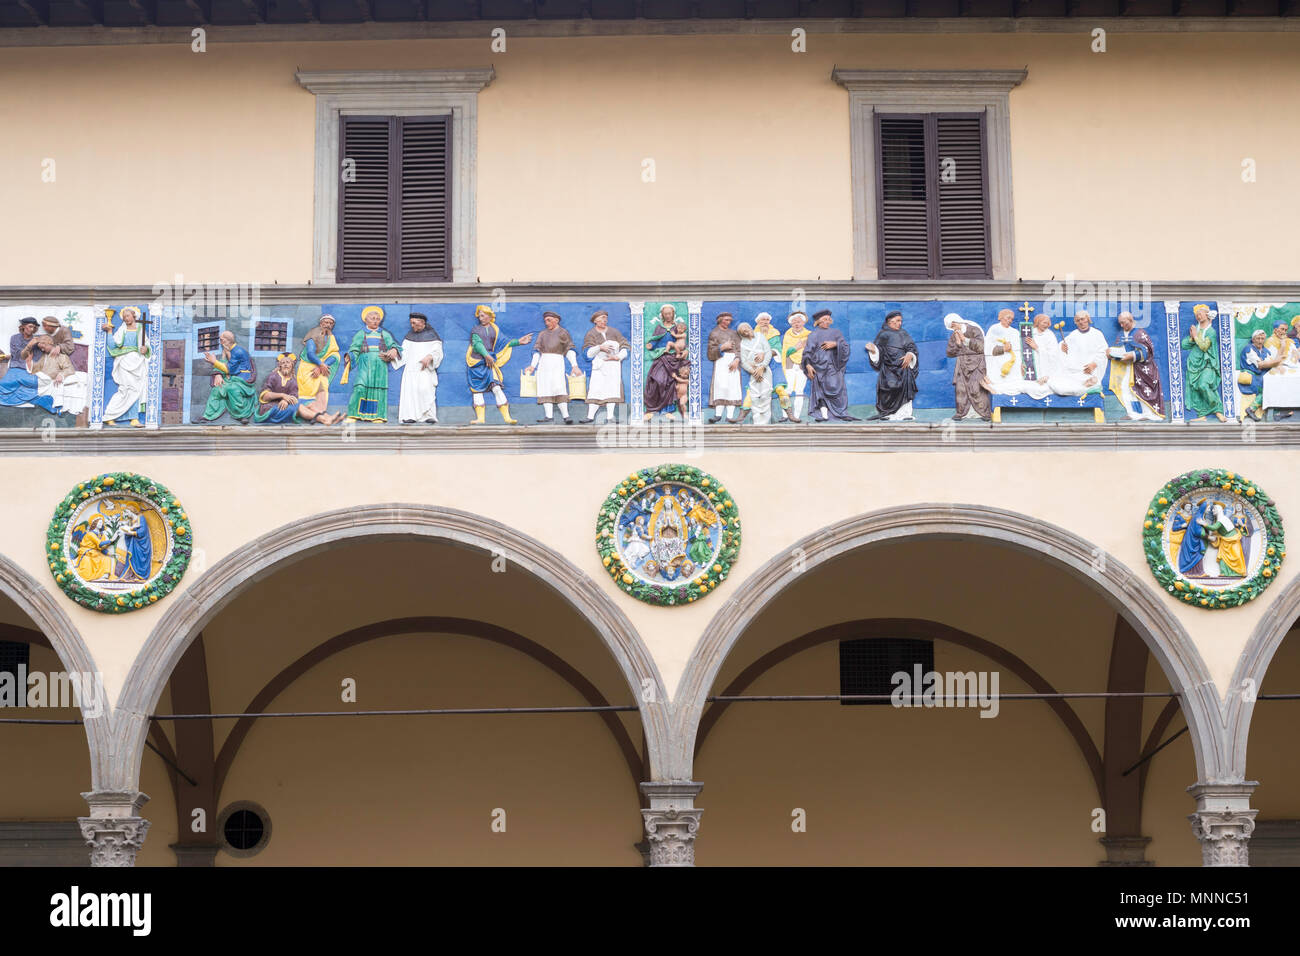 Frise en céramique montrant les sept oeuvres de miséricorde à l'extérieur de l'hôpital médiéval ou l'Ospedale del Ceppo, Pistoia, Toscane, Italie, Europe Banque D'Images